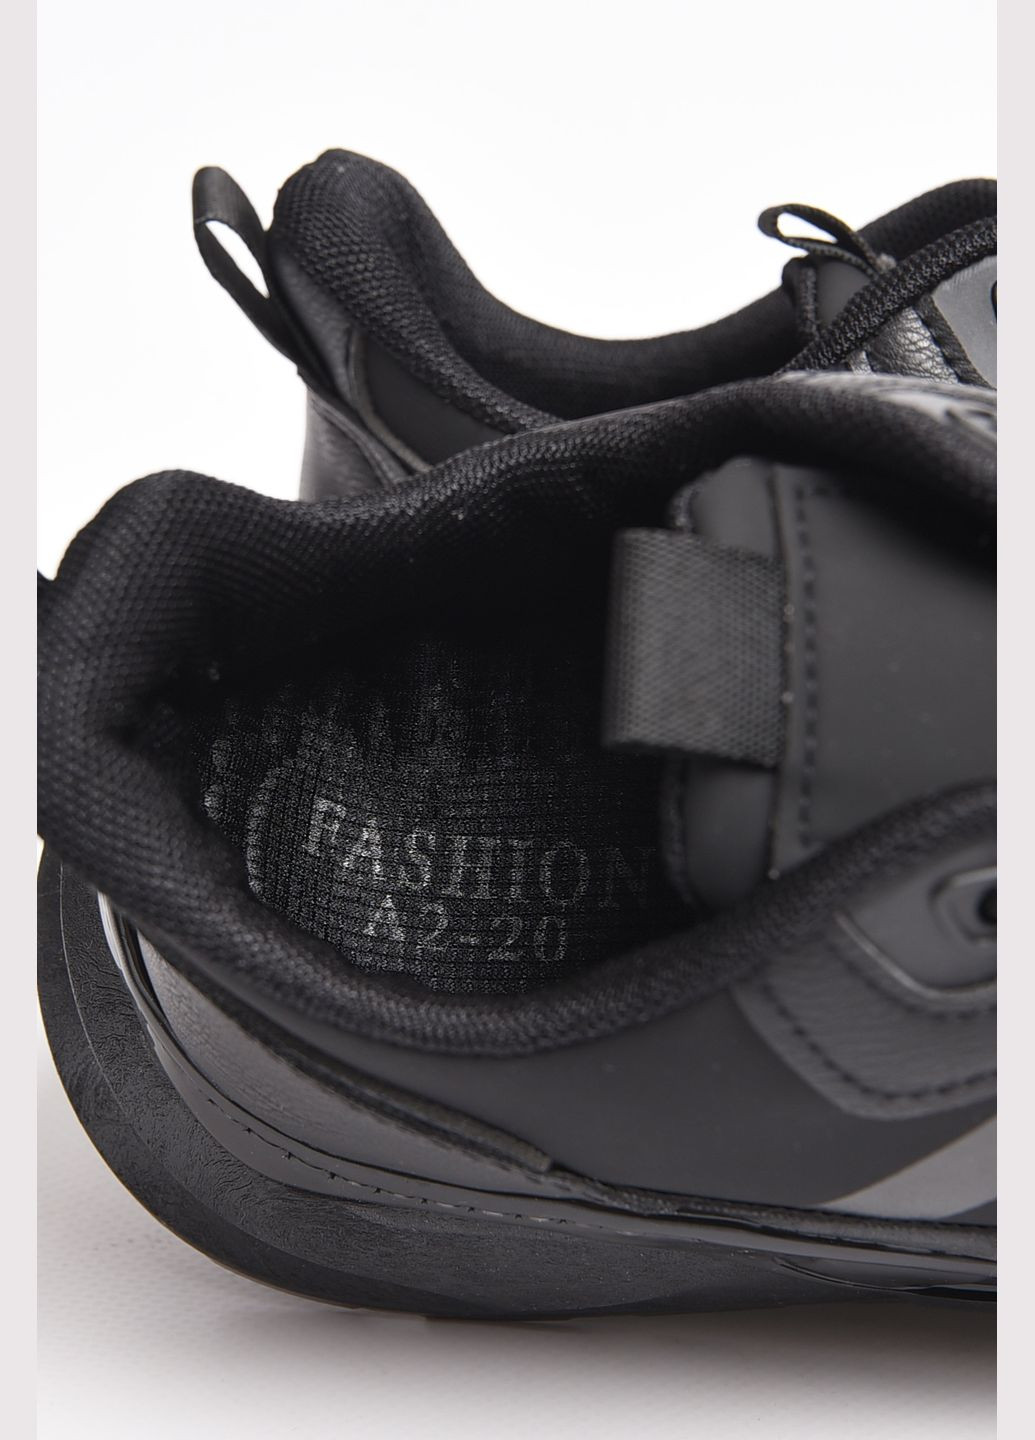 Чорні Осінні кросівки чоловічі чорного кольору на шнурівці Let's Shop